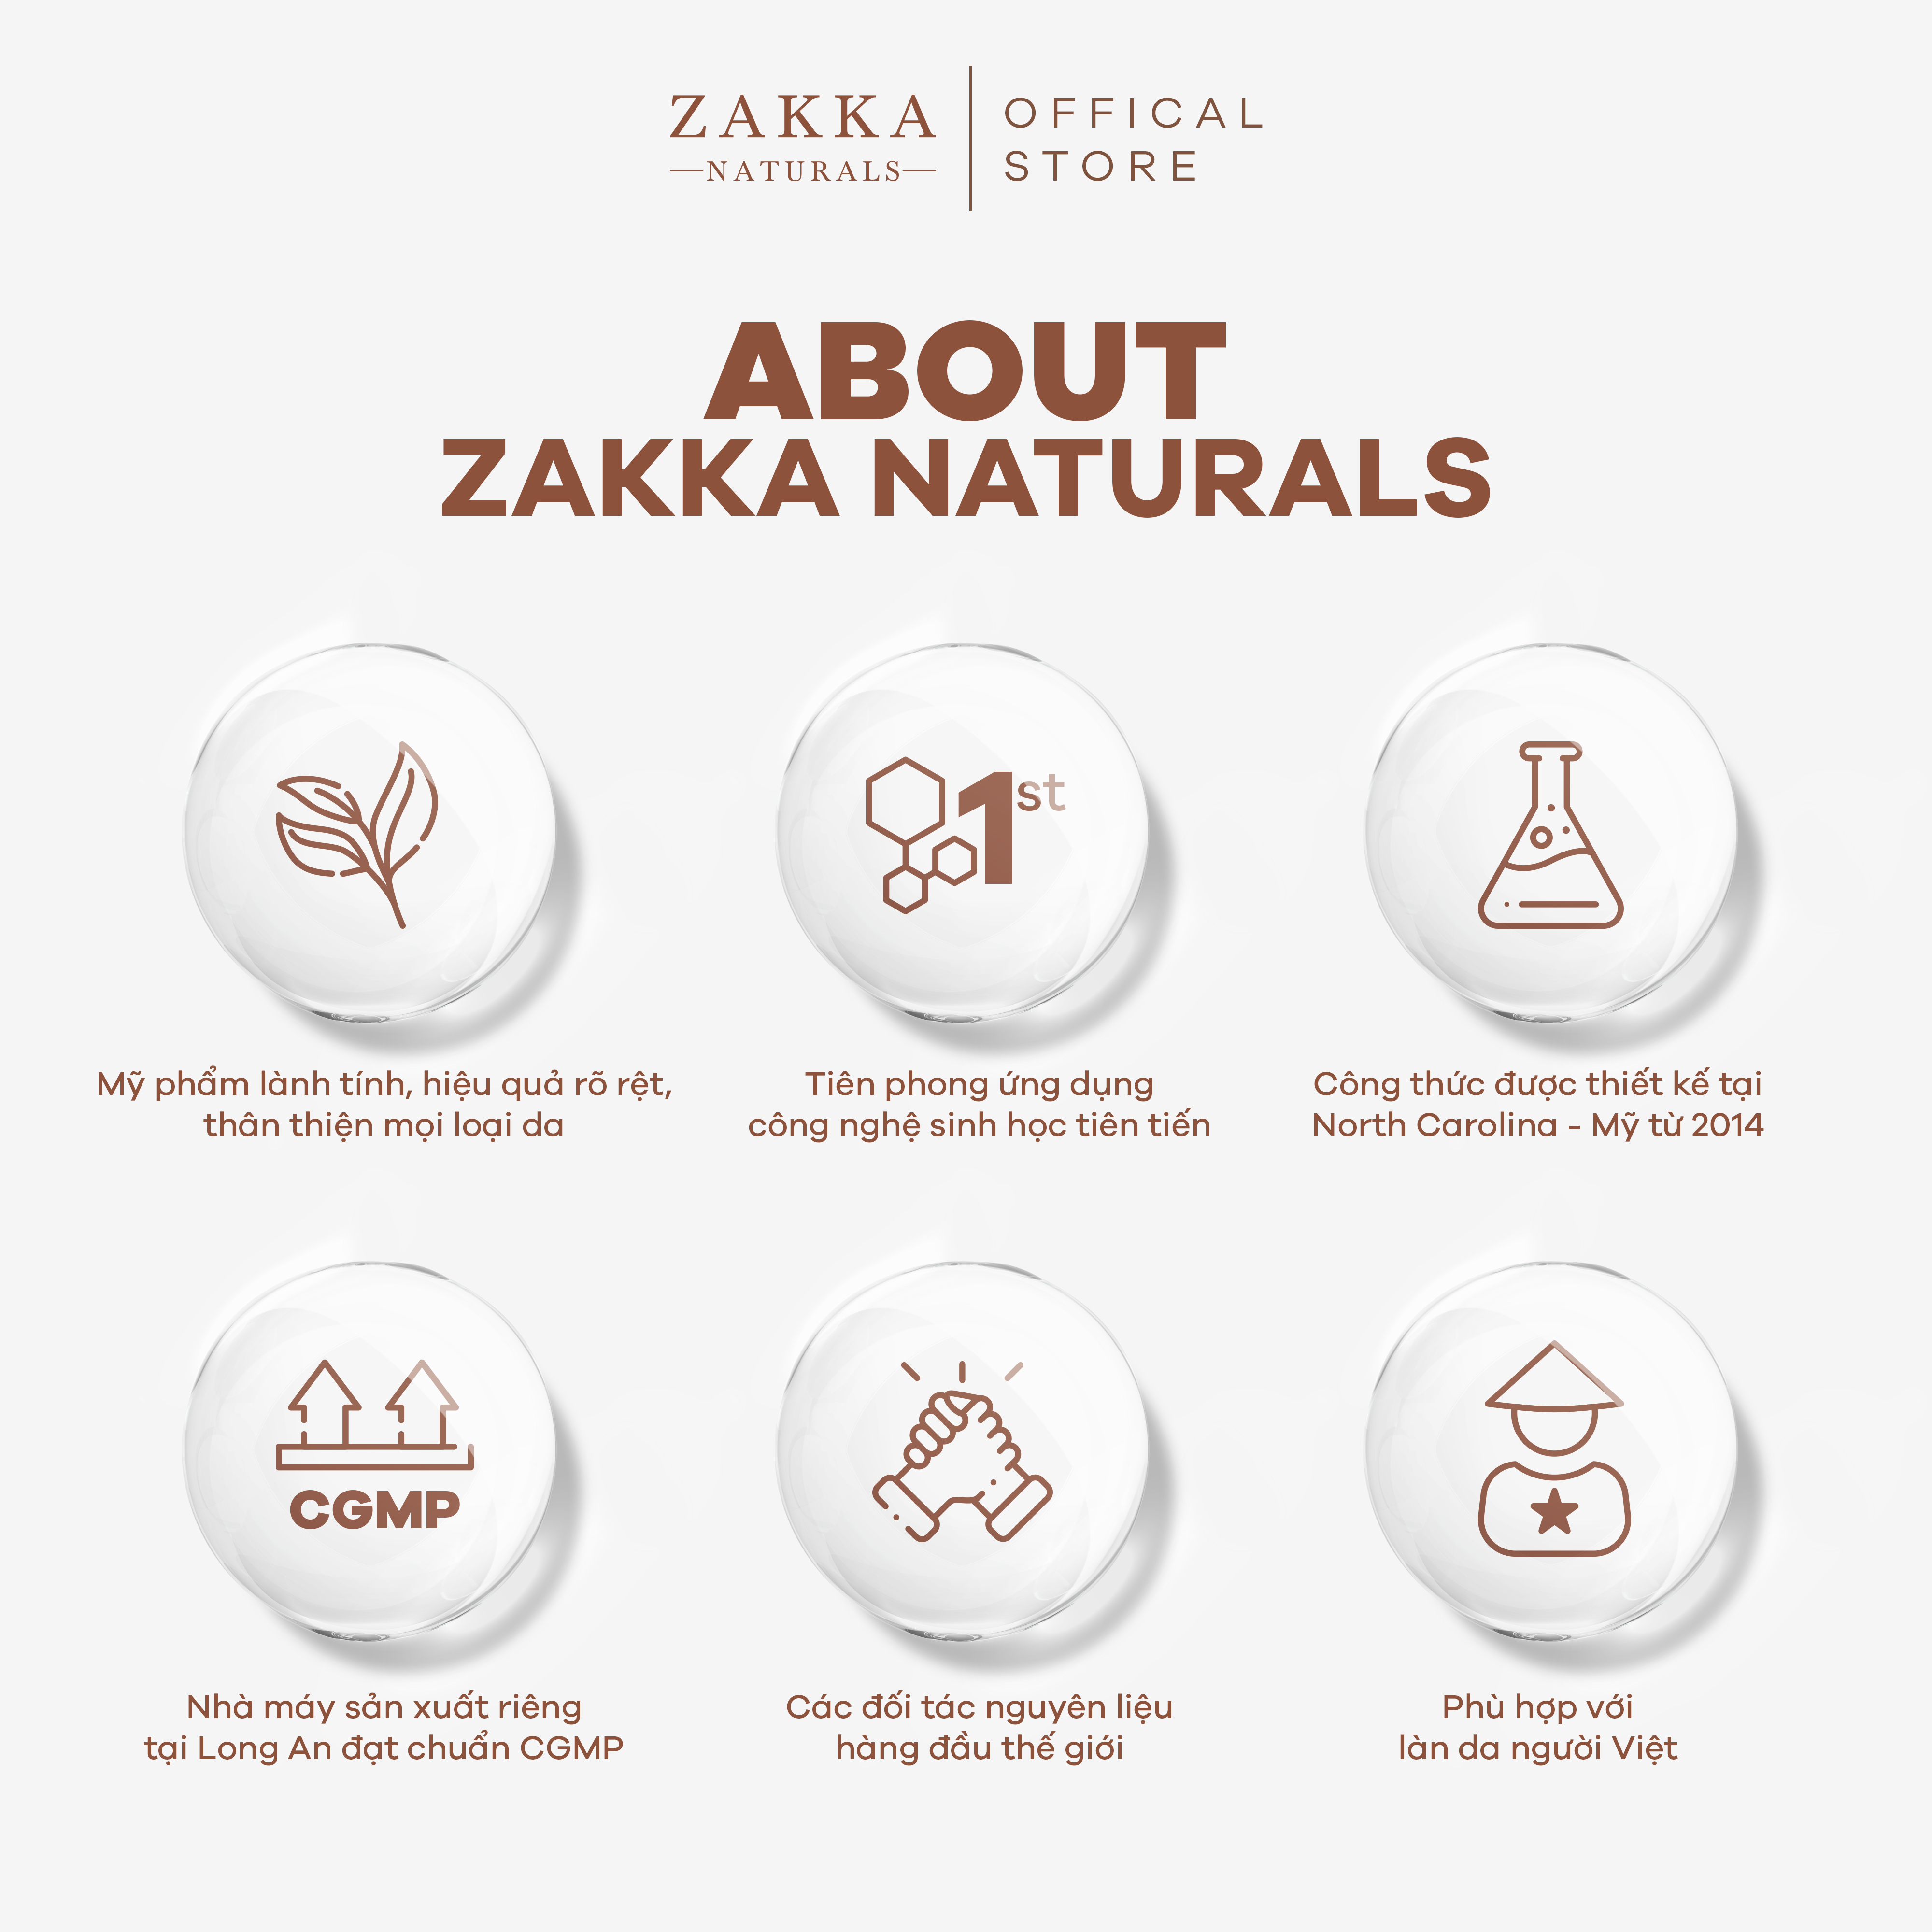 Serum (Tinh Chất) Vitamin C Zakka Naturals GlowFruit+ Brightening 20g